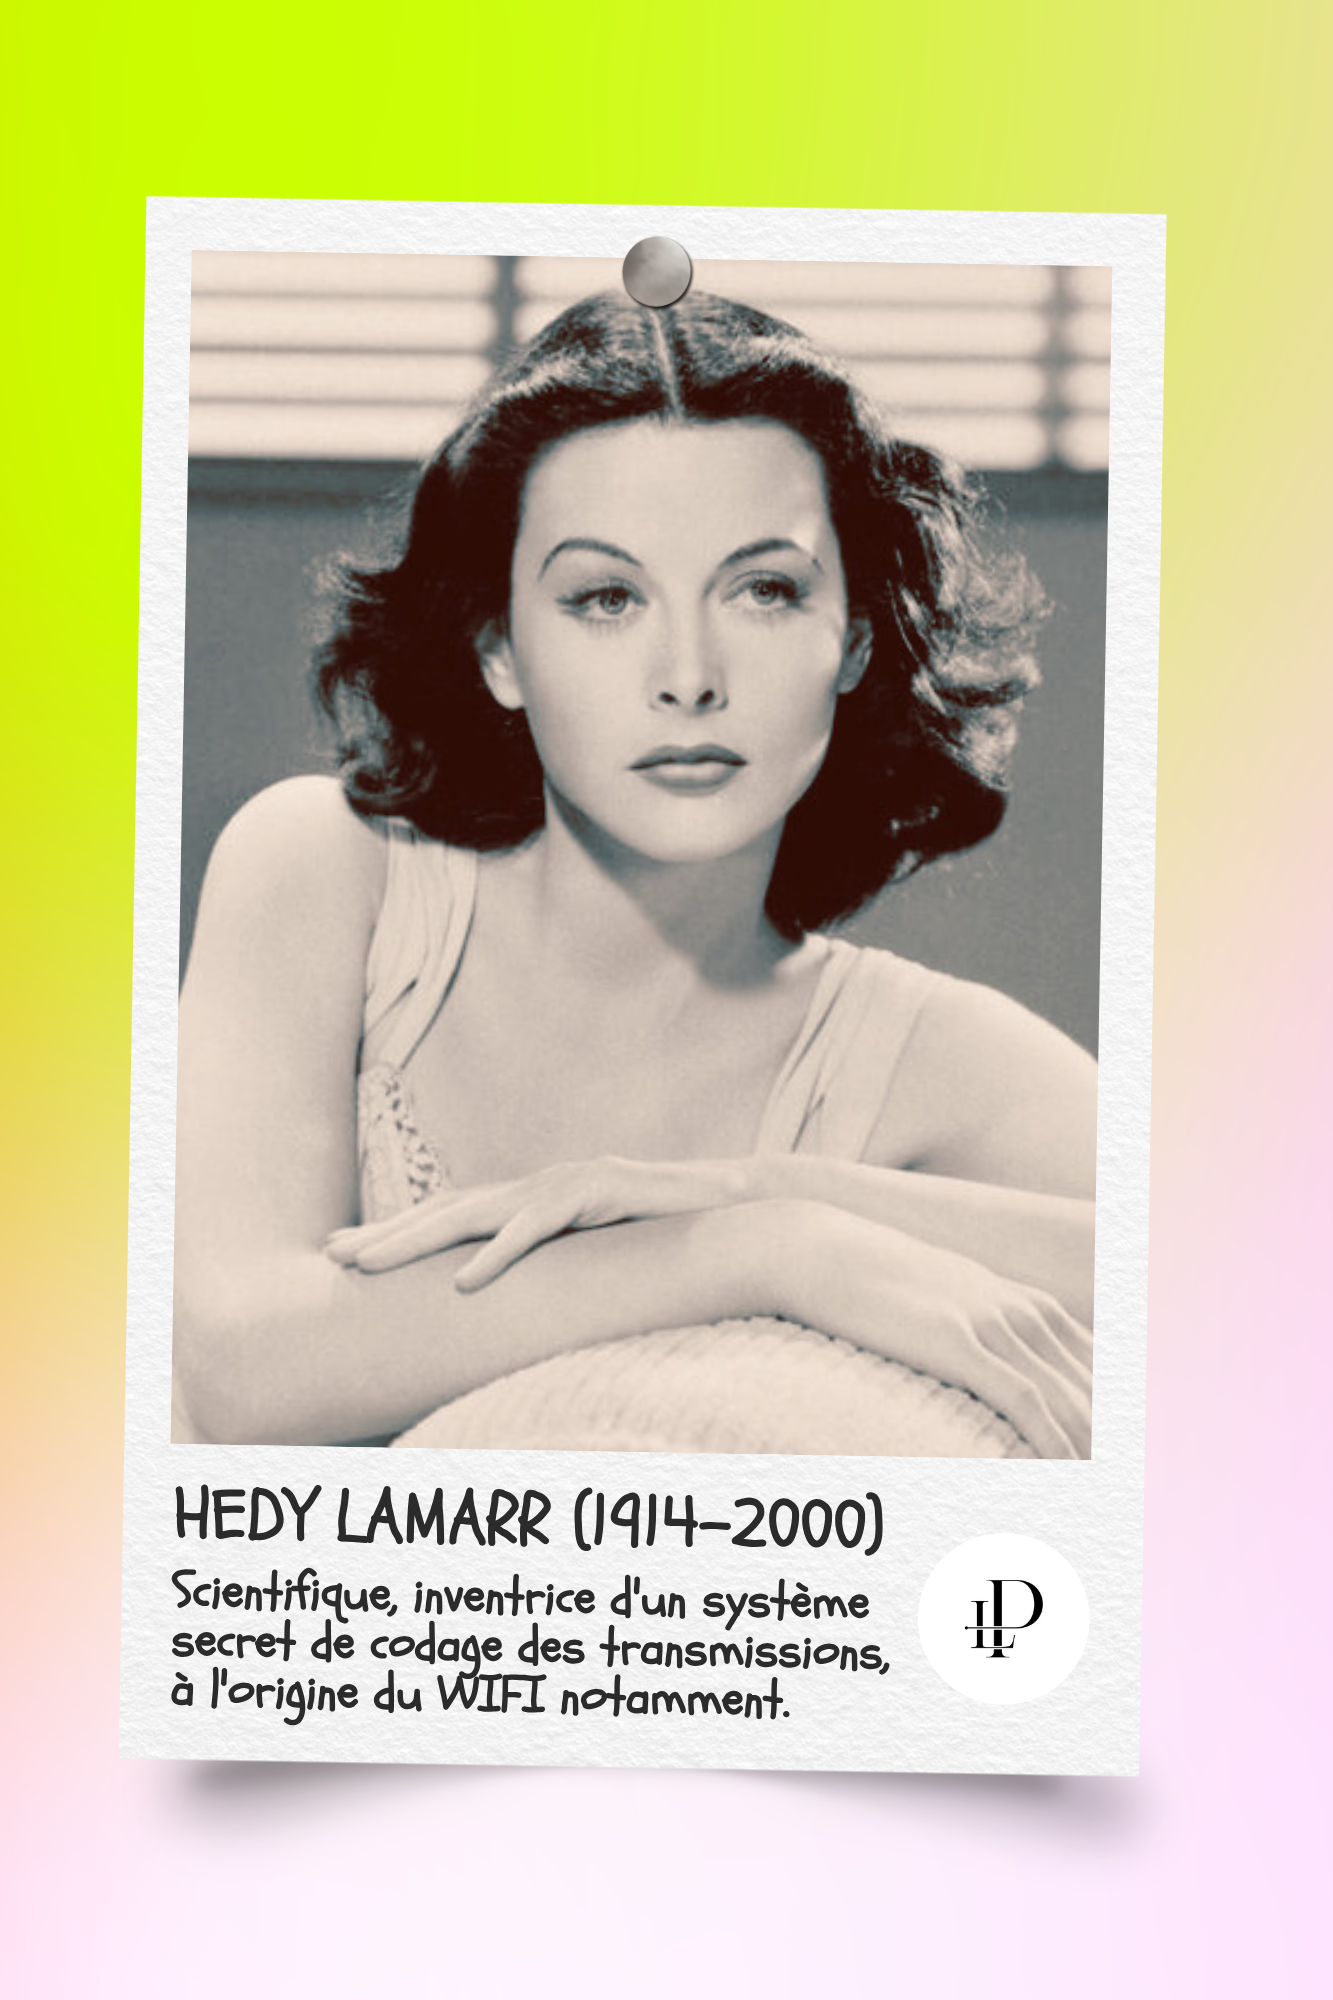 Hedy Lamarr (1914-2000)